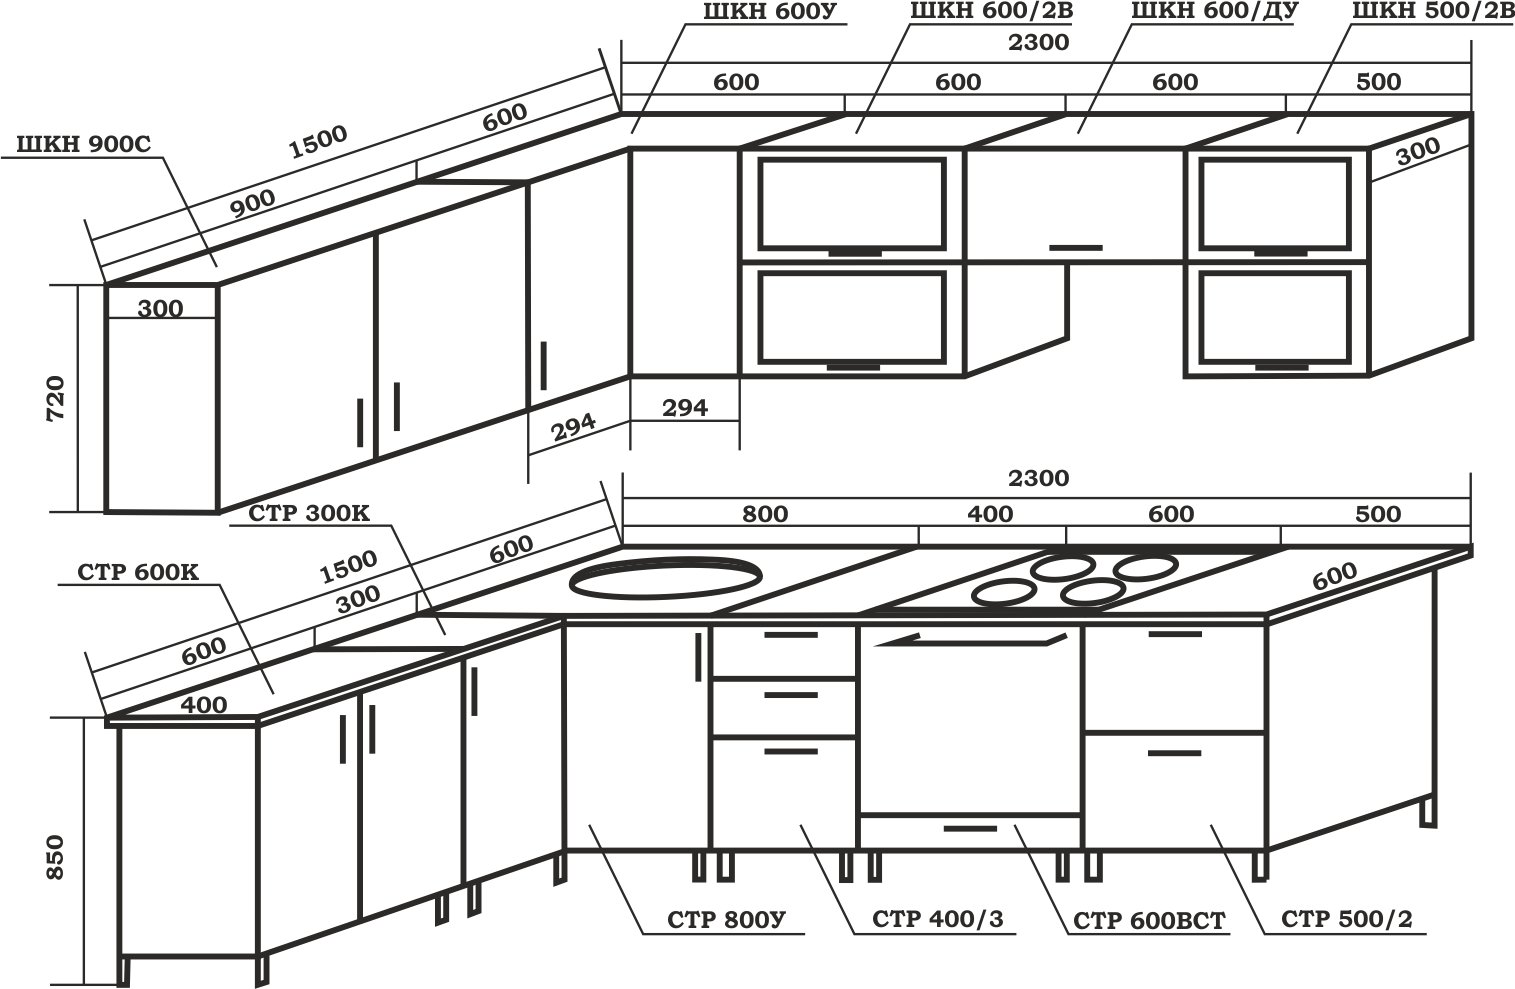 Стандартные размеры кухонных шкафов и фасадов: высота, ширина и глубина кухонных гарнитуров